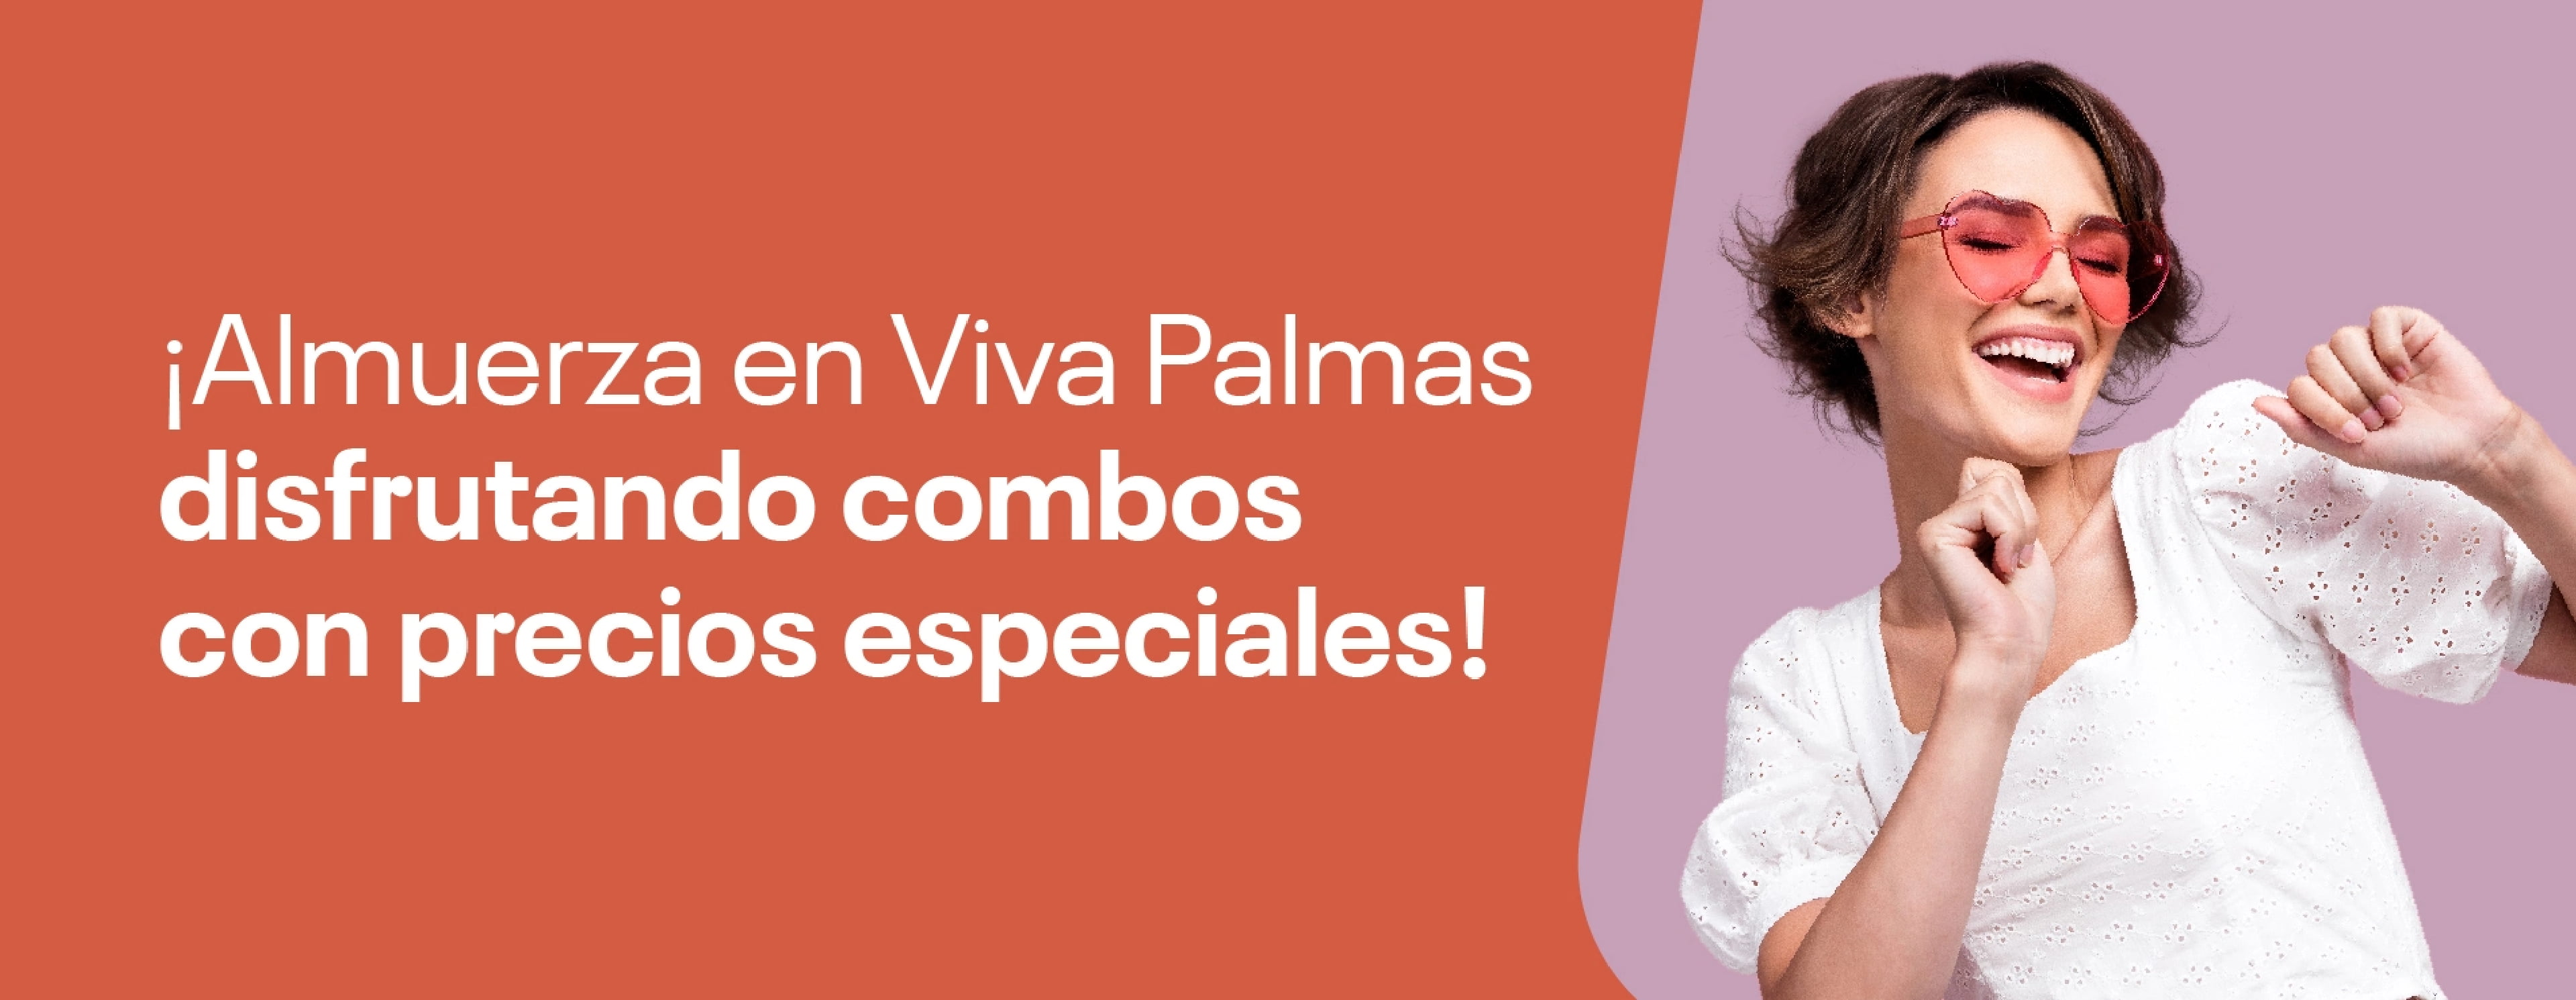 ¡Almuerza en Viva Palmas disfrutando combos con precios especiales!